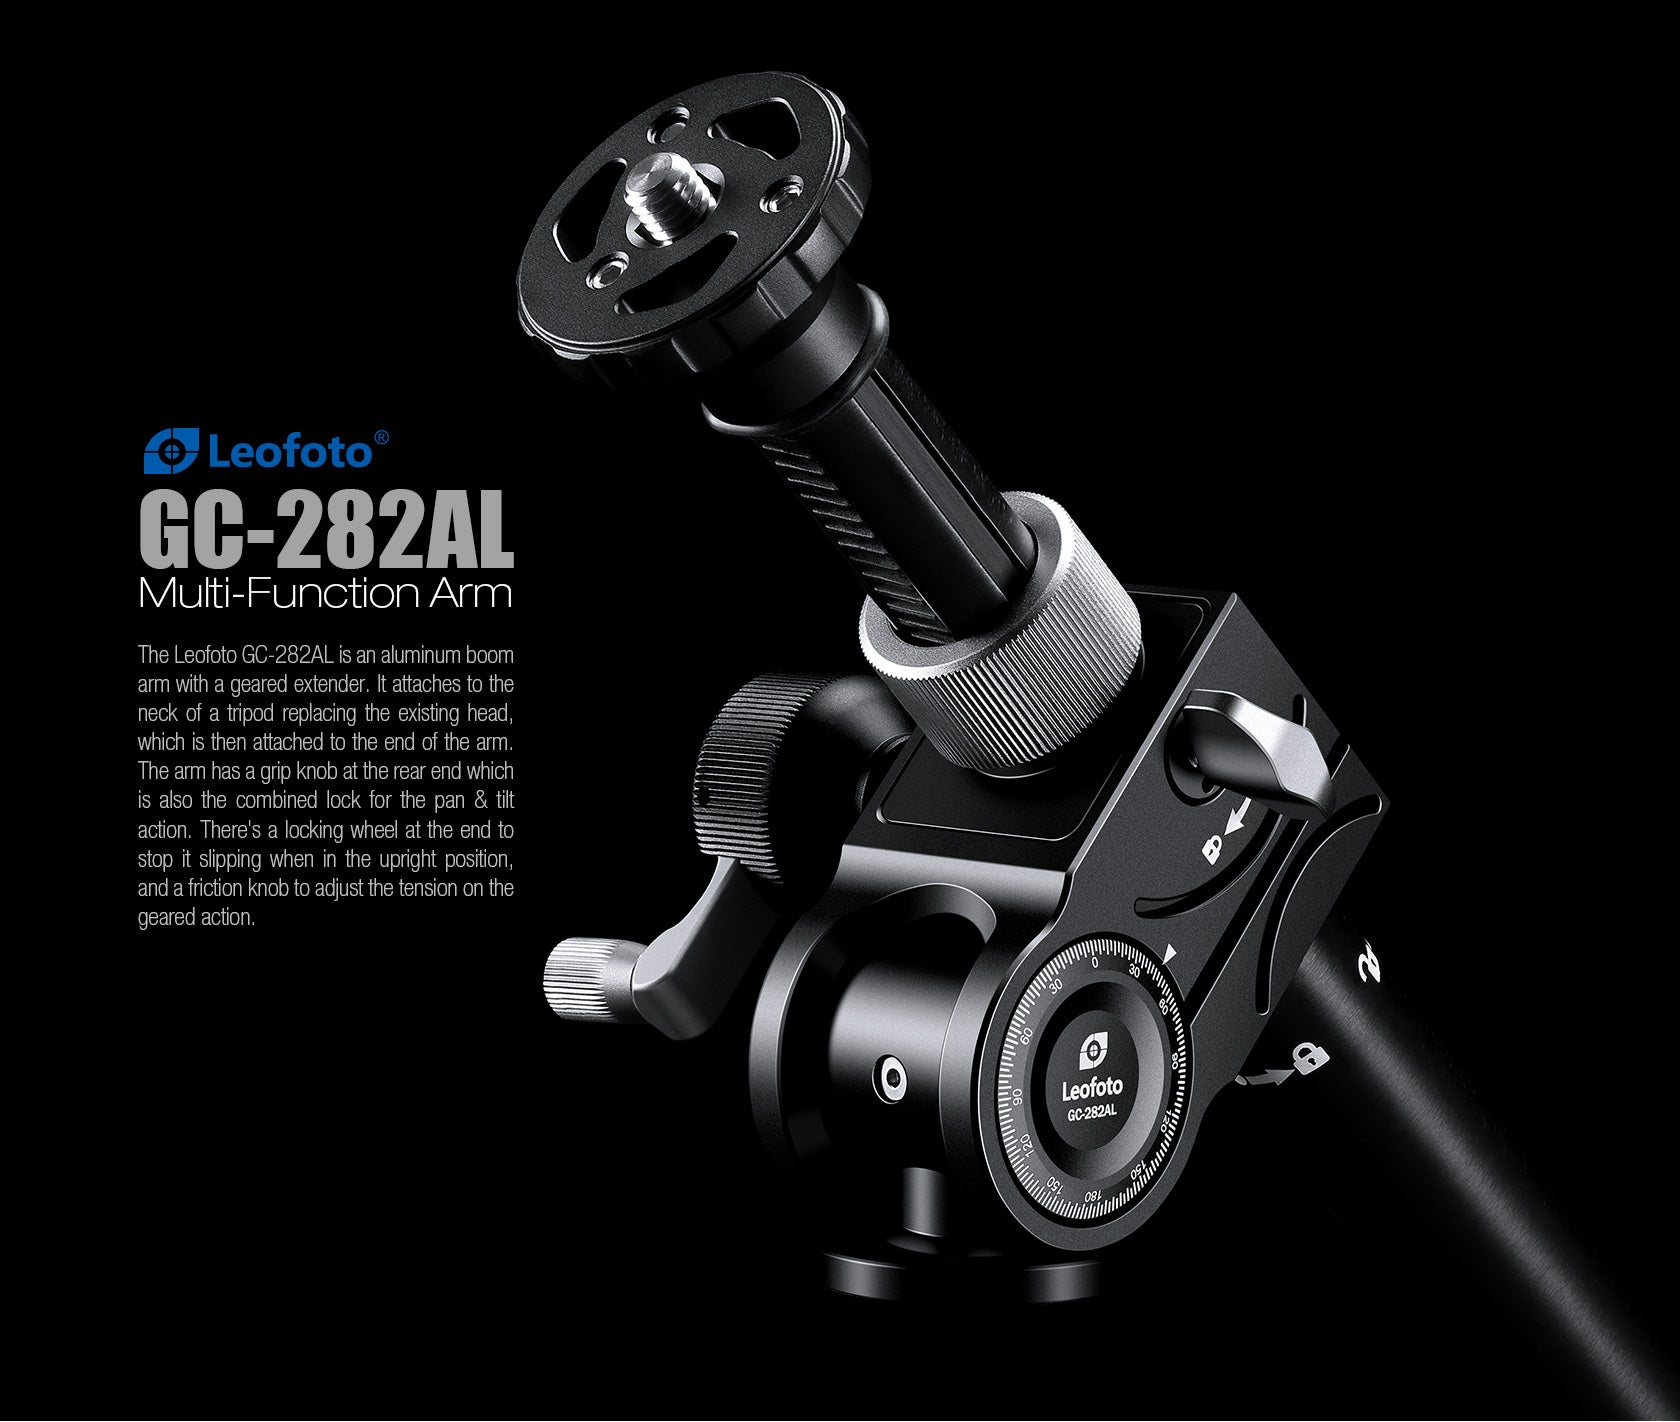 Leofoto GC-282AL Geared Multi-Function Boom Arm | Geared Driven Extension Drive